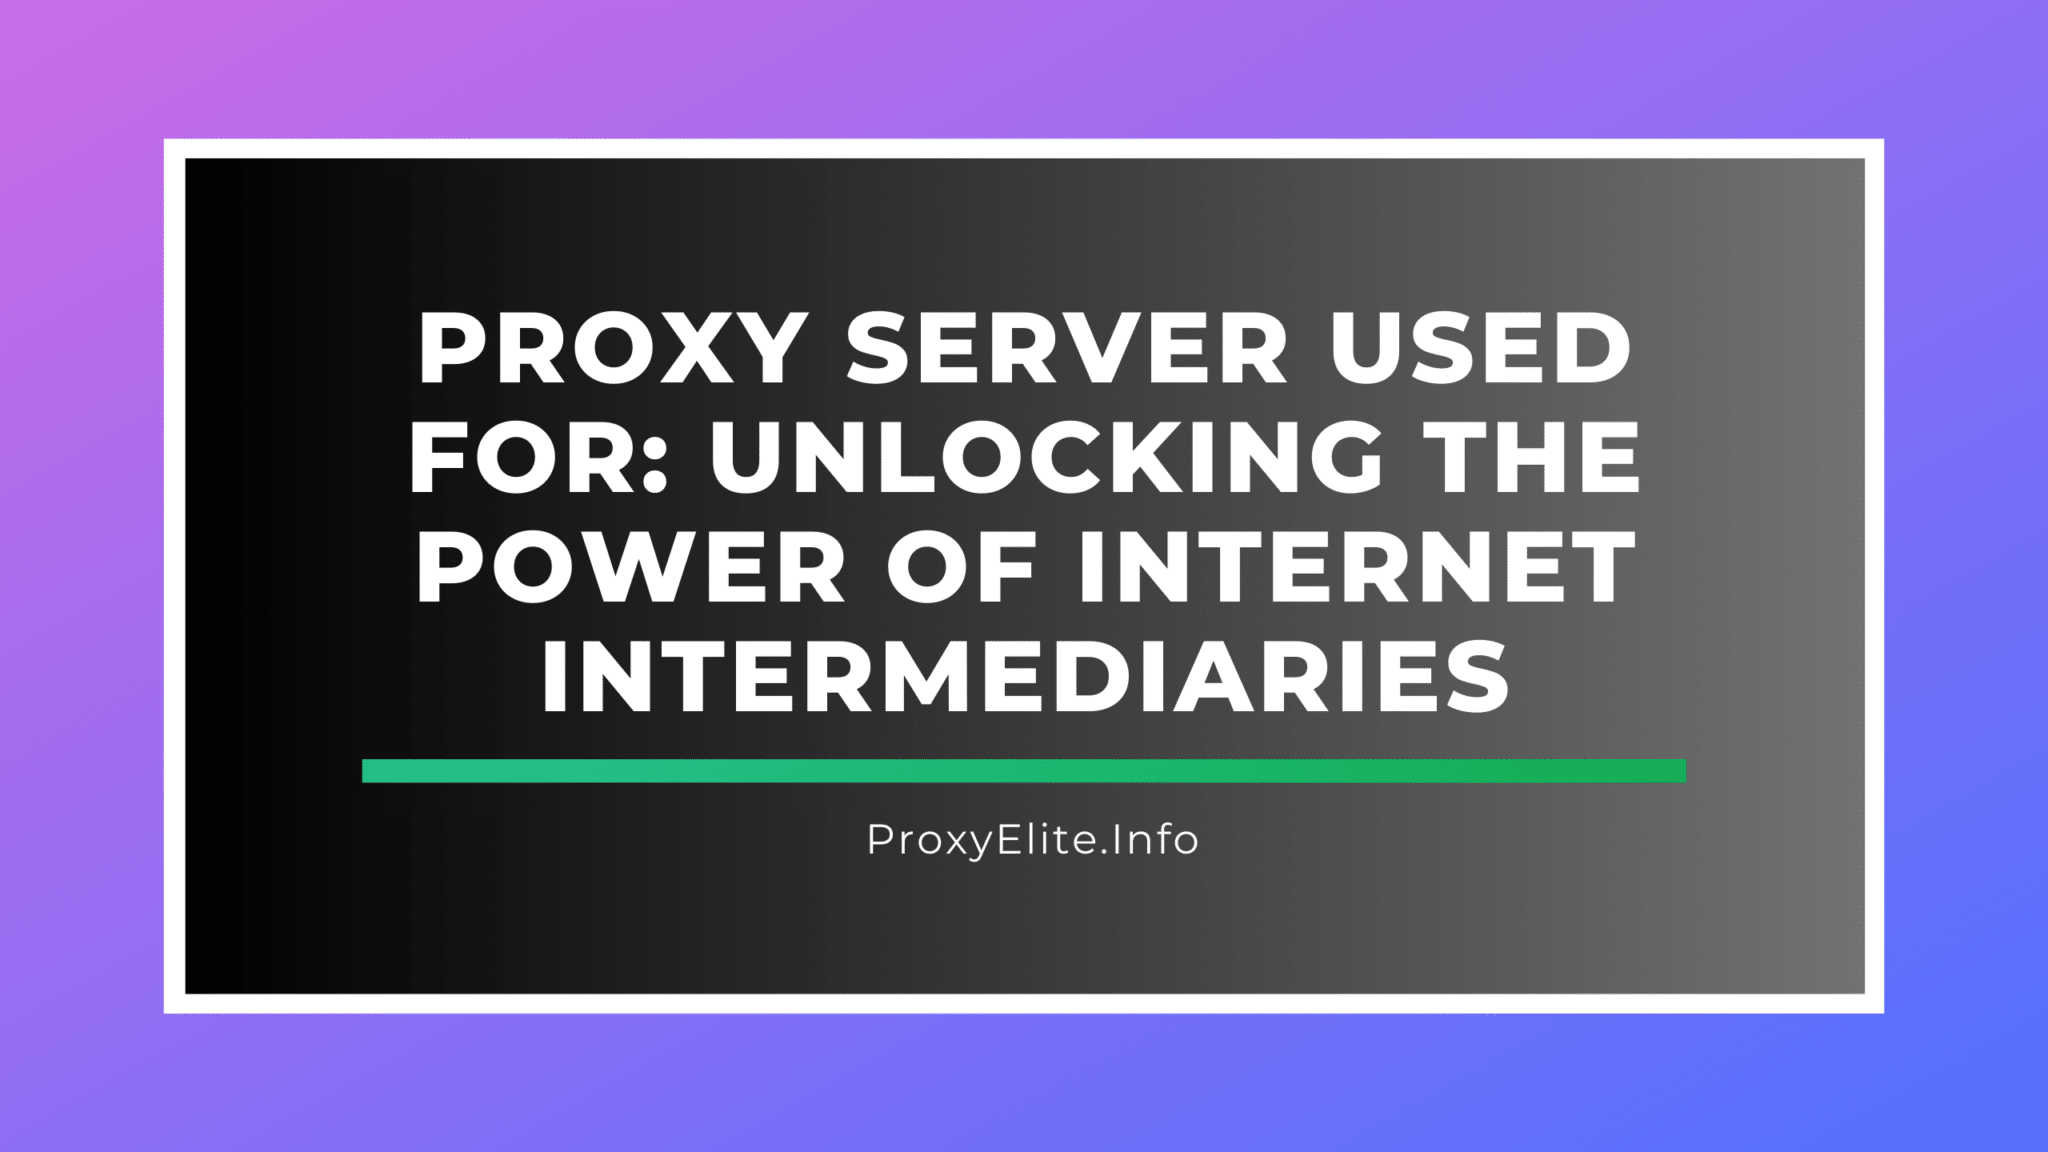 Máy chủ proxy được sử dụng để: Giải phóng sức mạnh của các trung gian Internet